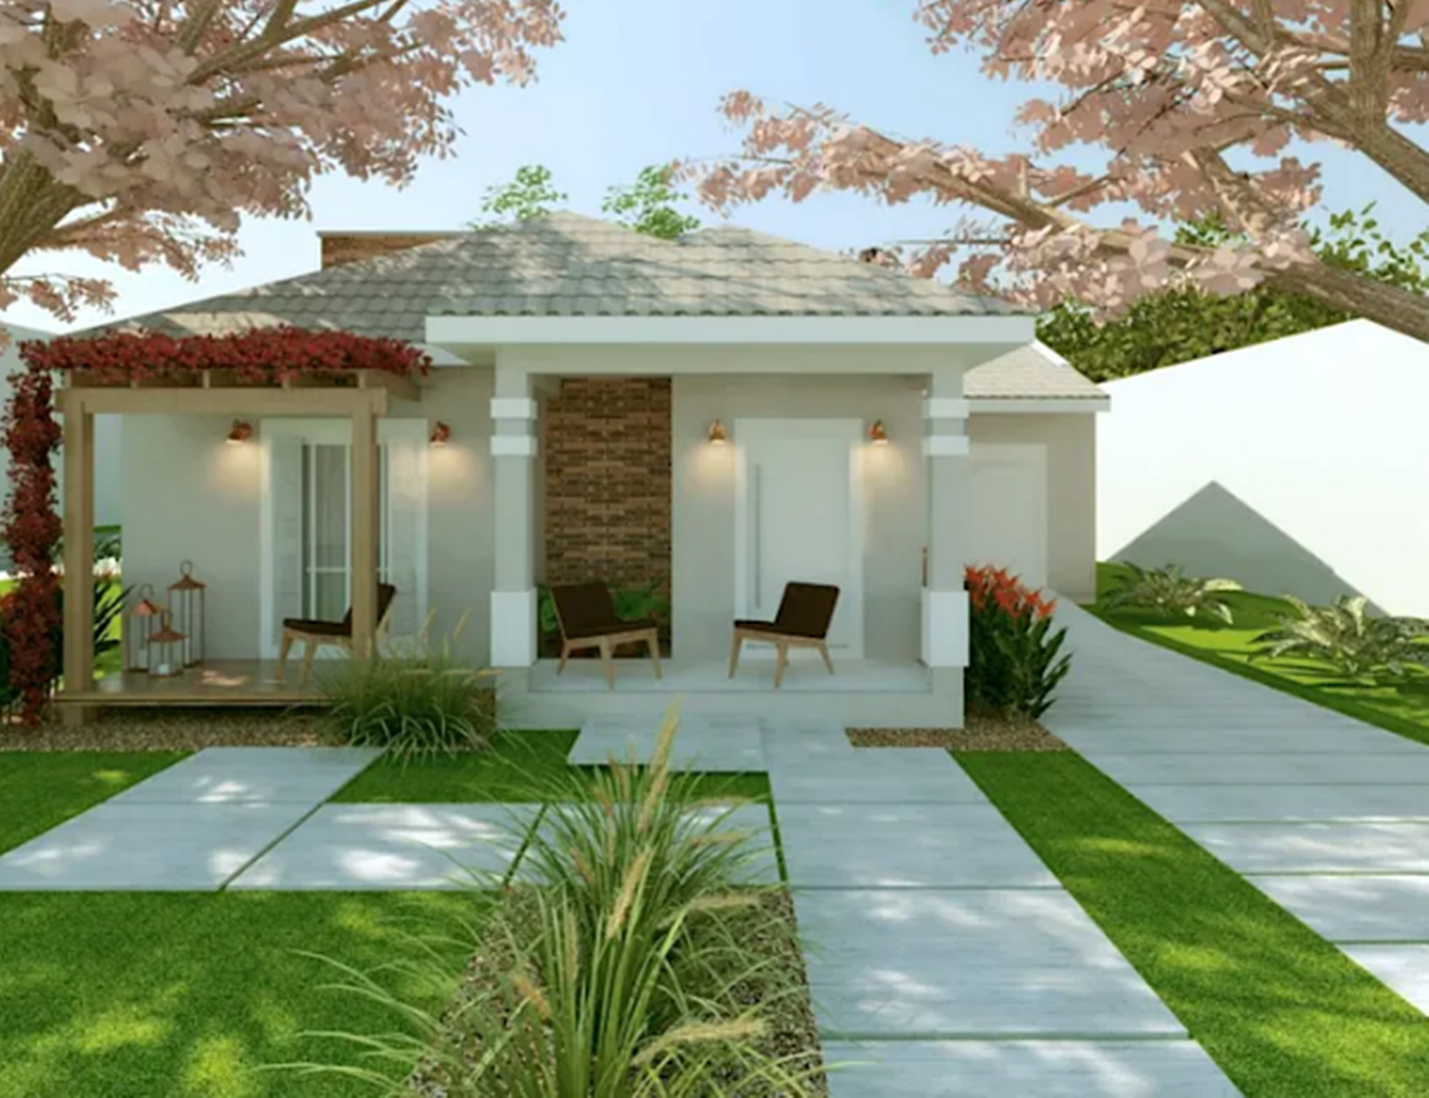 11 Desain Bentuk Rumah Sederhana Tapi Elegan Terbaru 2020